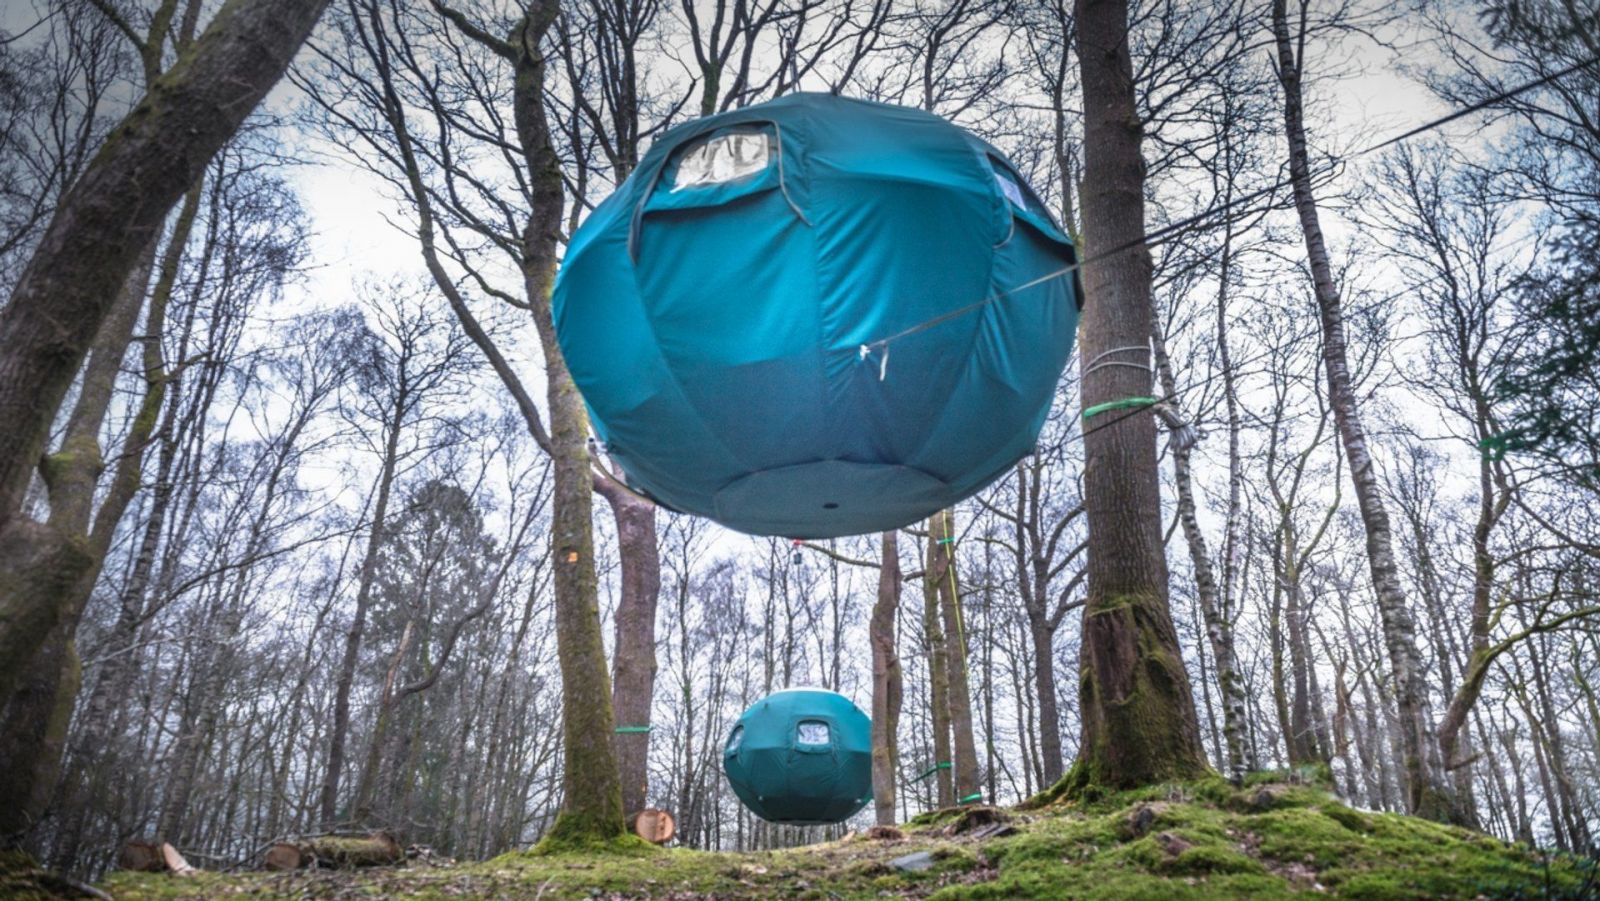 132871 В парке Lake District создали палаточный городок на деревьях